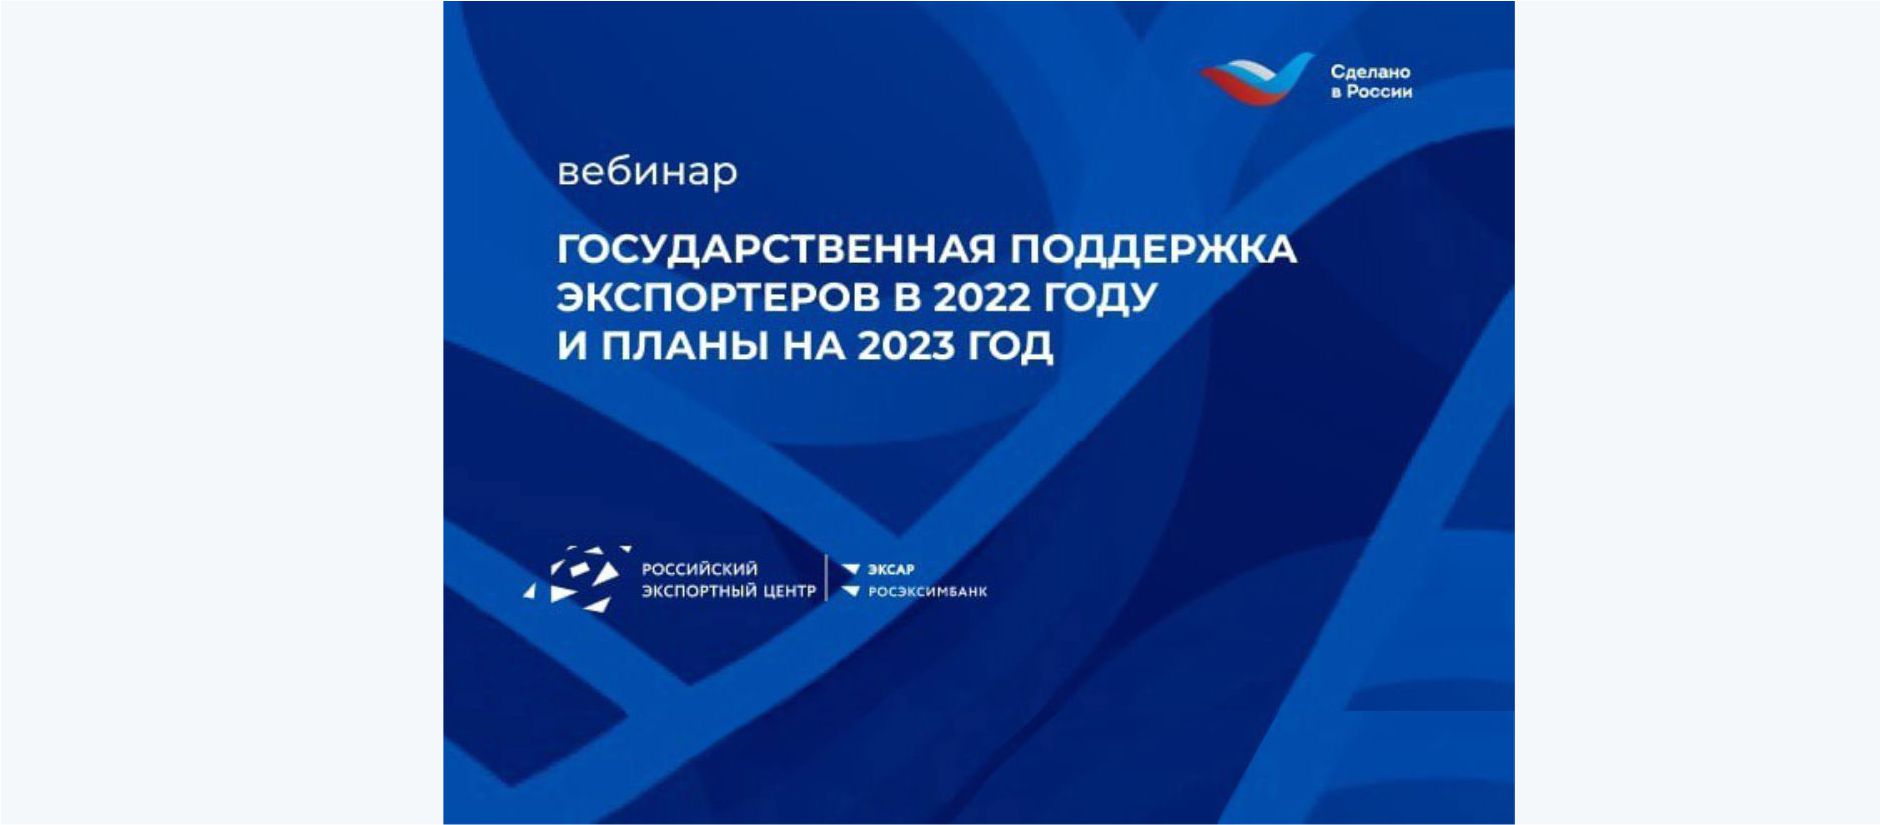 Нижегородский институт прикладных технологий принял участие в вебинаре «Государственная поддержка экспортеров в 2022 году и планы на 2023 год»